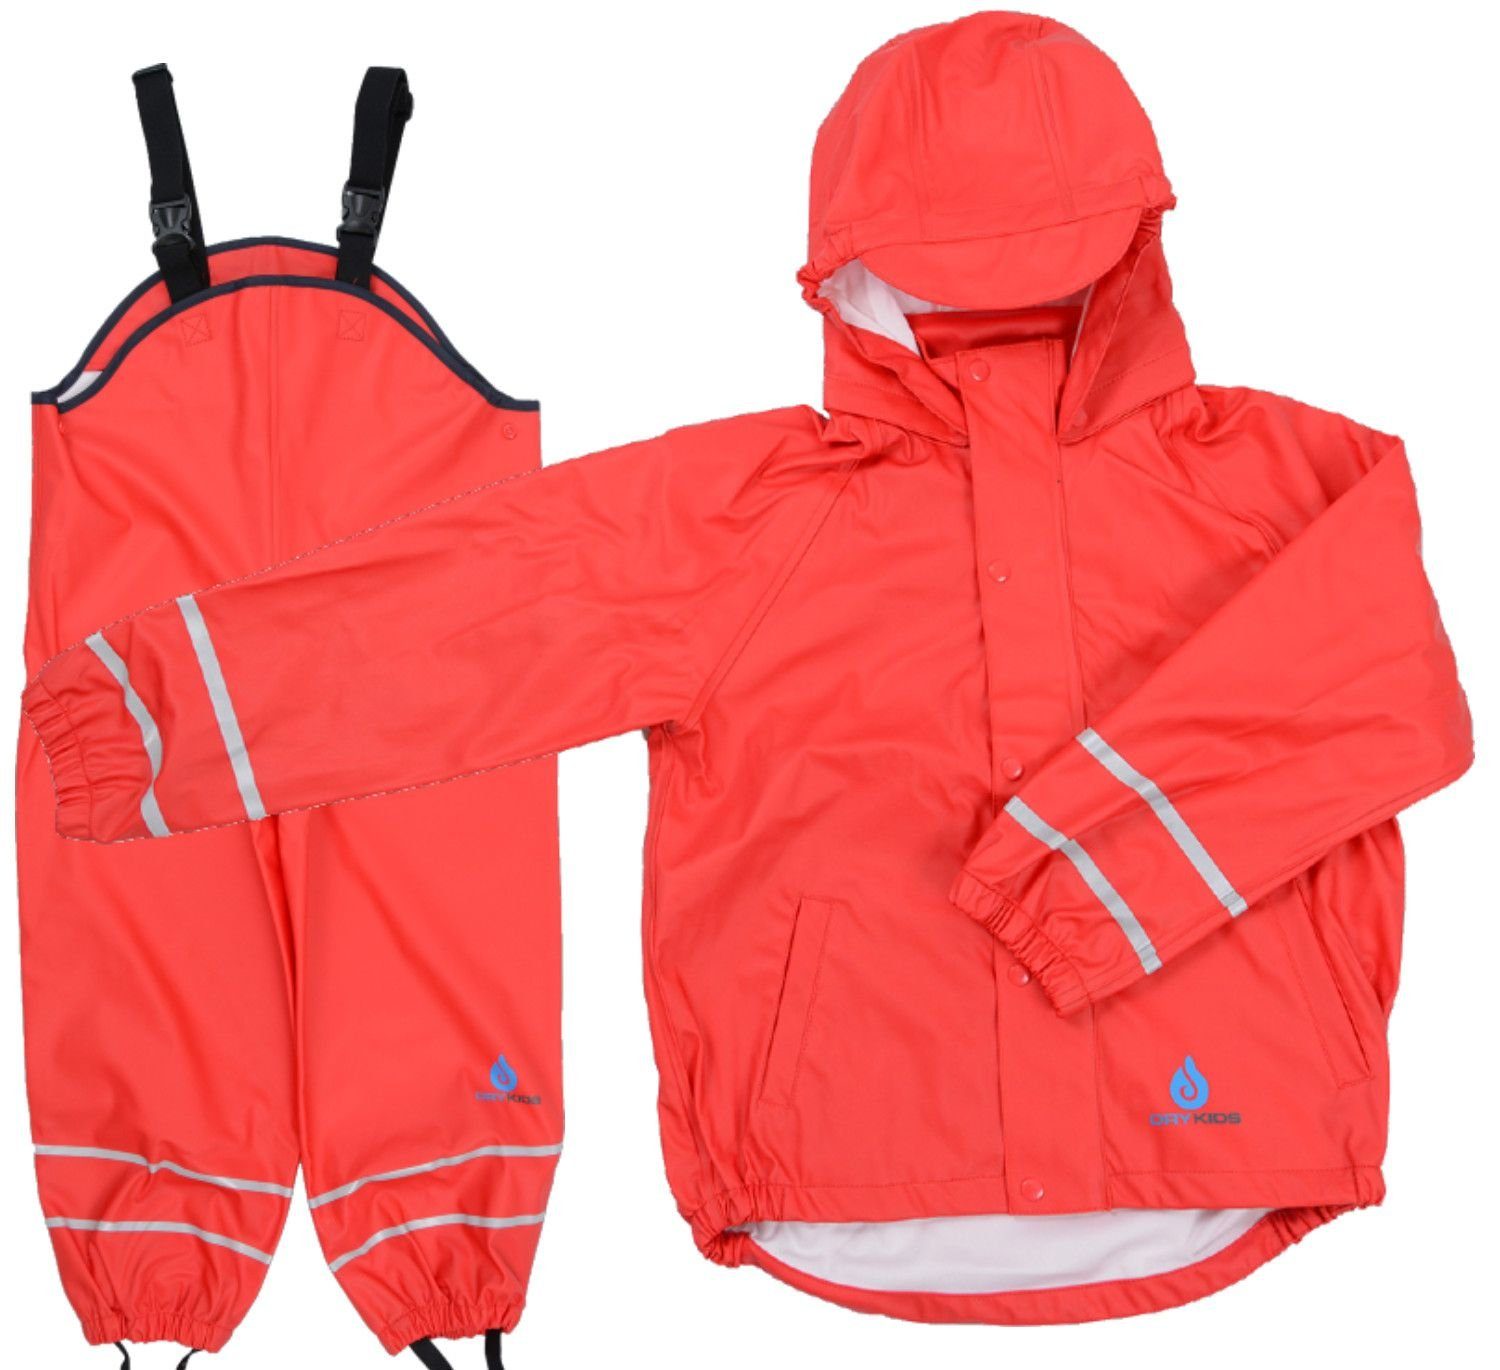 DRY KIDS Regenanzug (Set, 2-tlg), Wasserdichter Regenanzug für Kinder  Regenhose mit Hosenträger Regenjacke mit Kapuze reflektierende  Regenbekleidung Größe 98 - 104 Rot online kaufen | OTTO